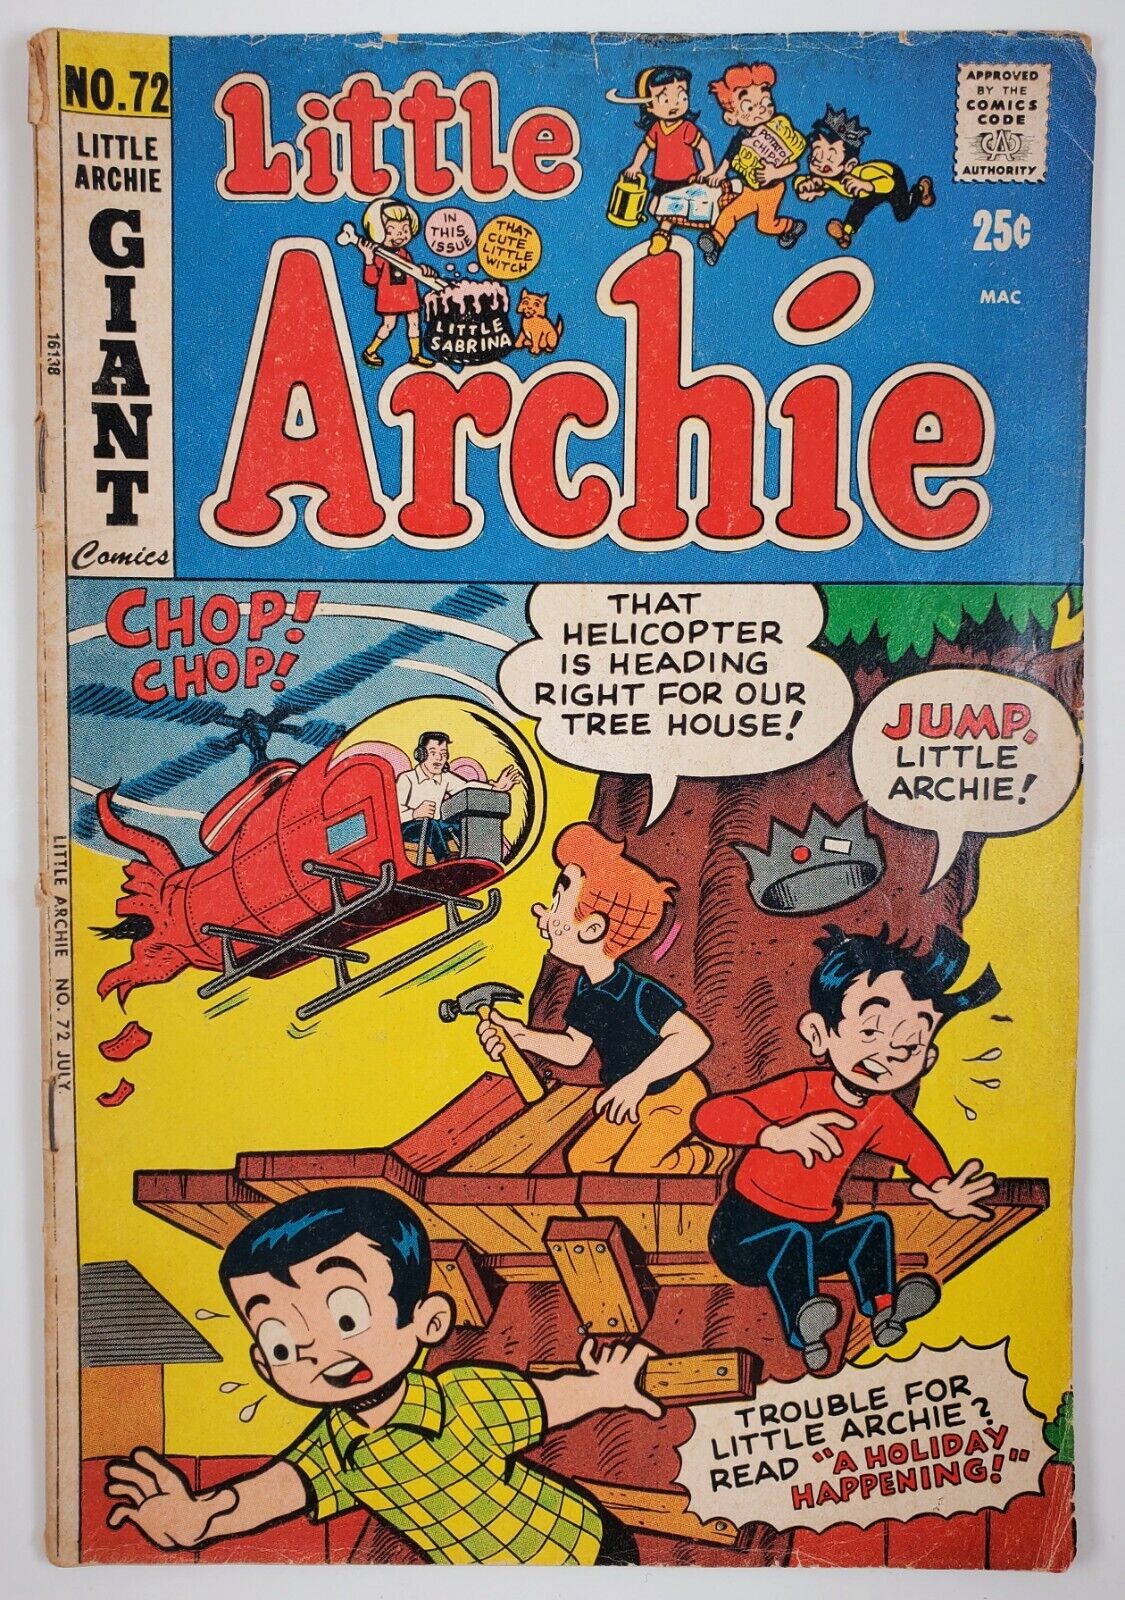 Little Archie No. 72 (July 1972) Little Archie Giant Comics